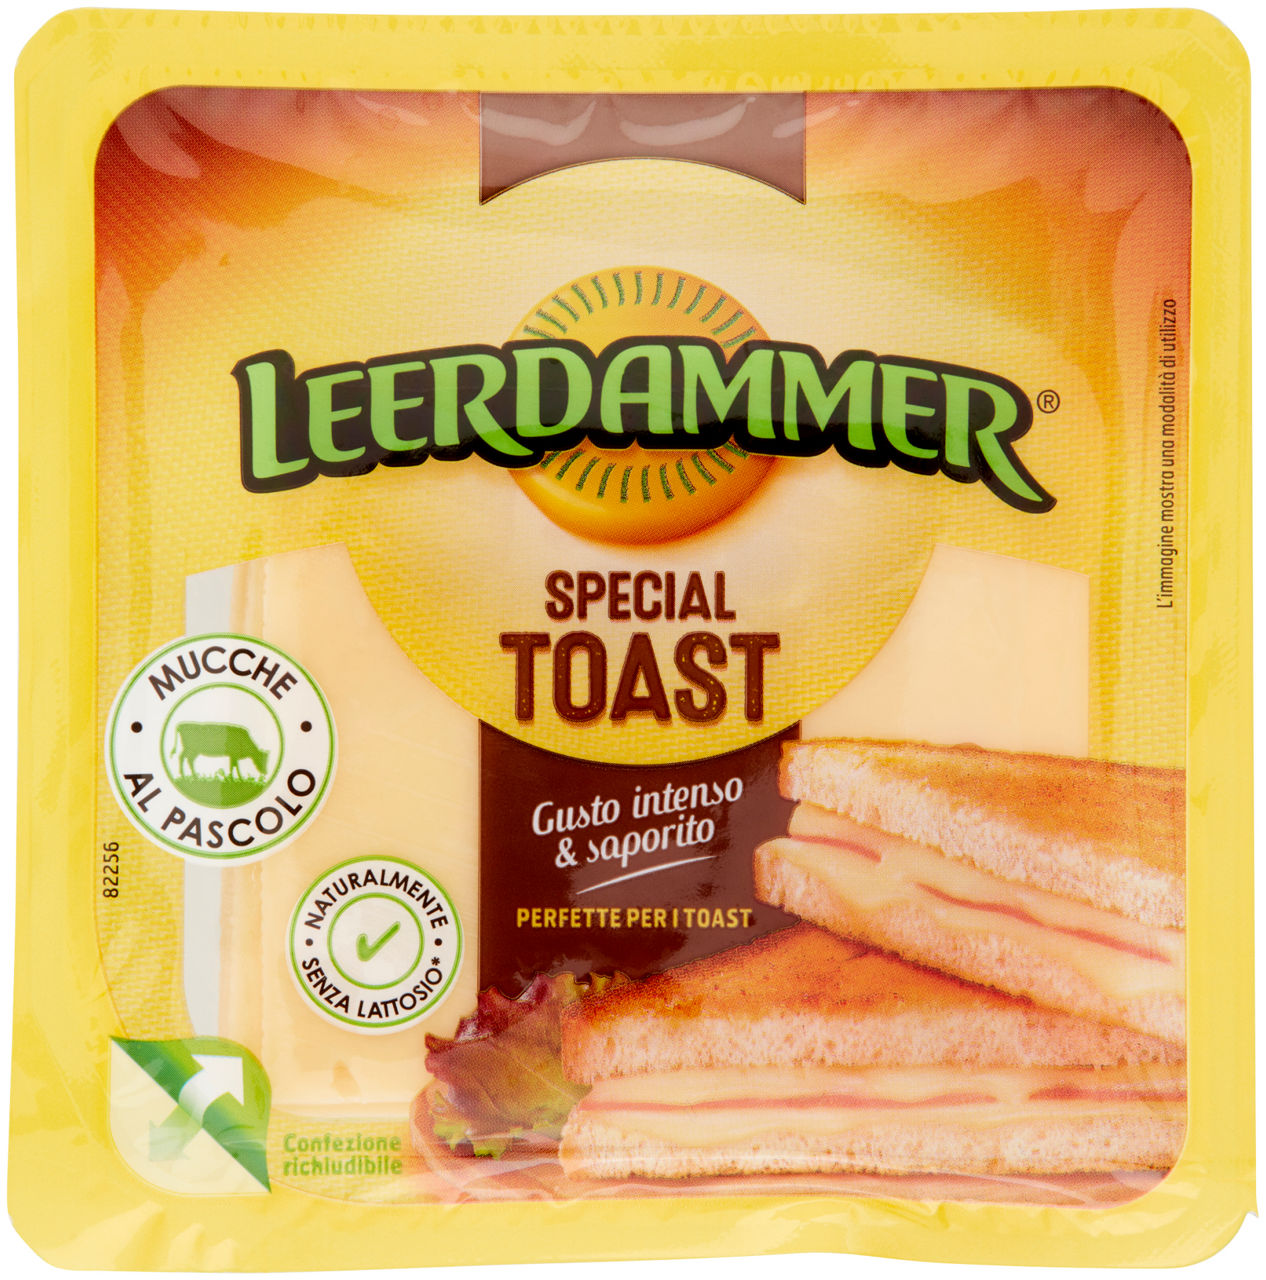 Leerdammer special toast vaschetta g 125